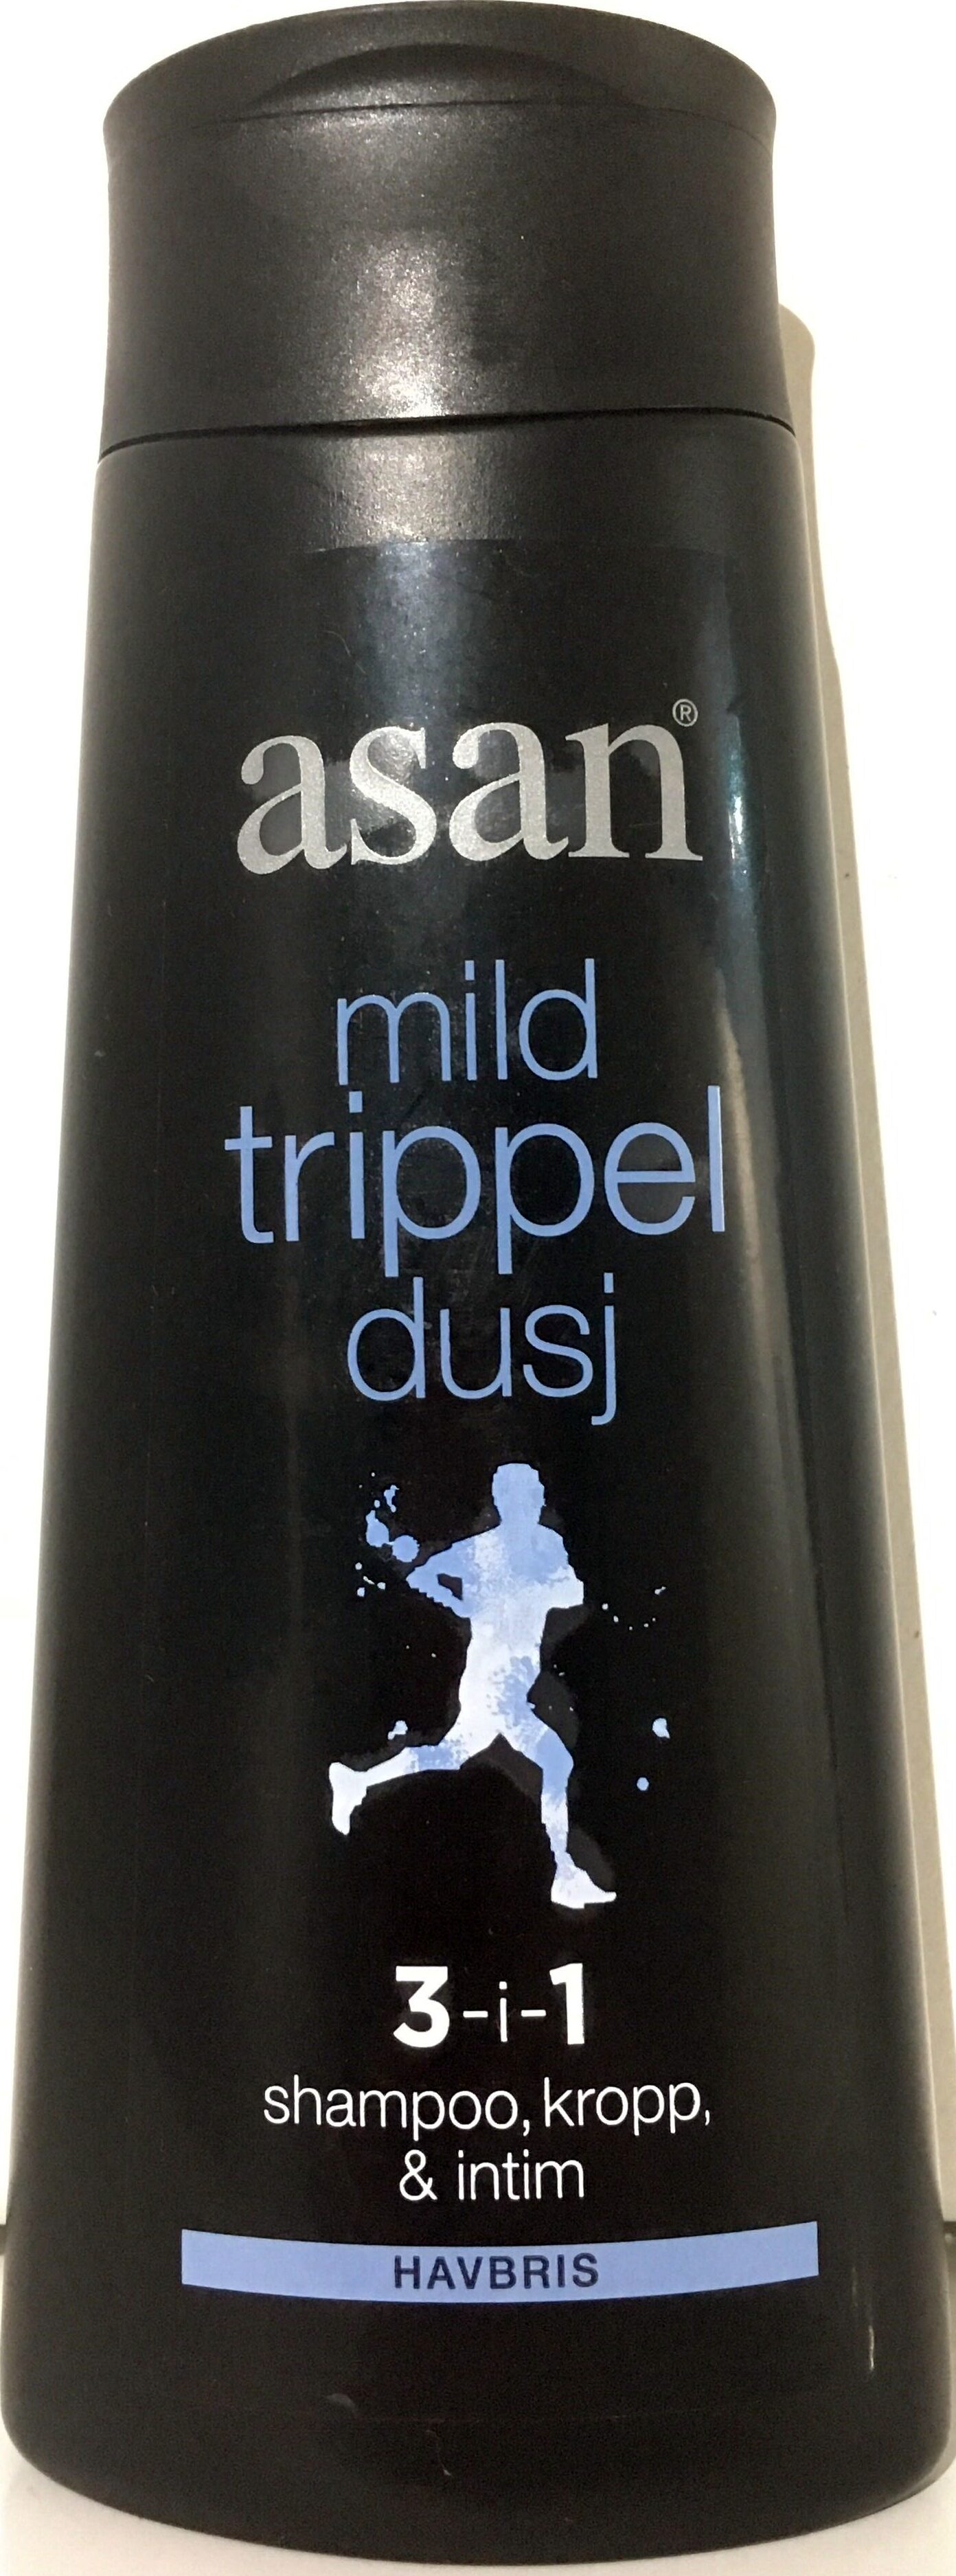 mild trippel dusj - Product - nb